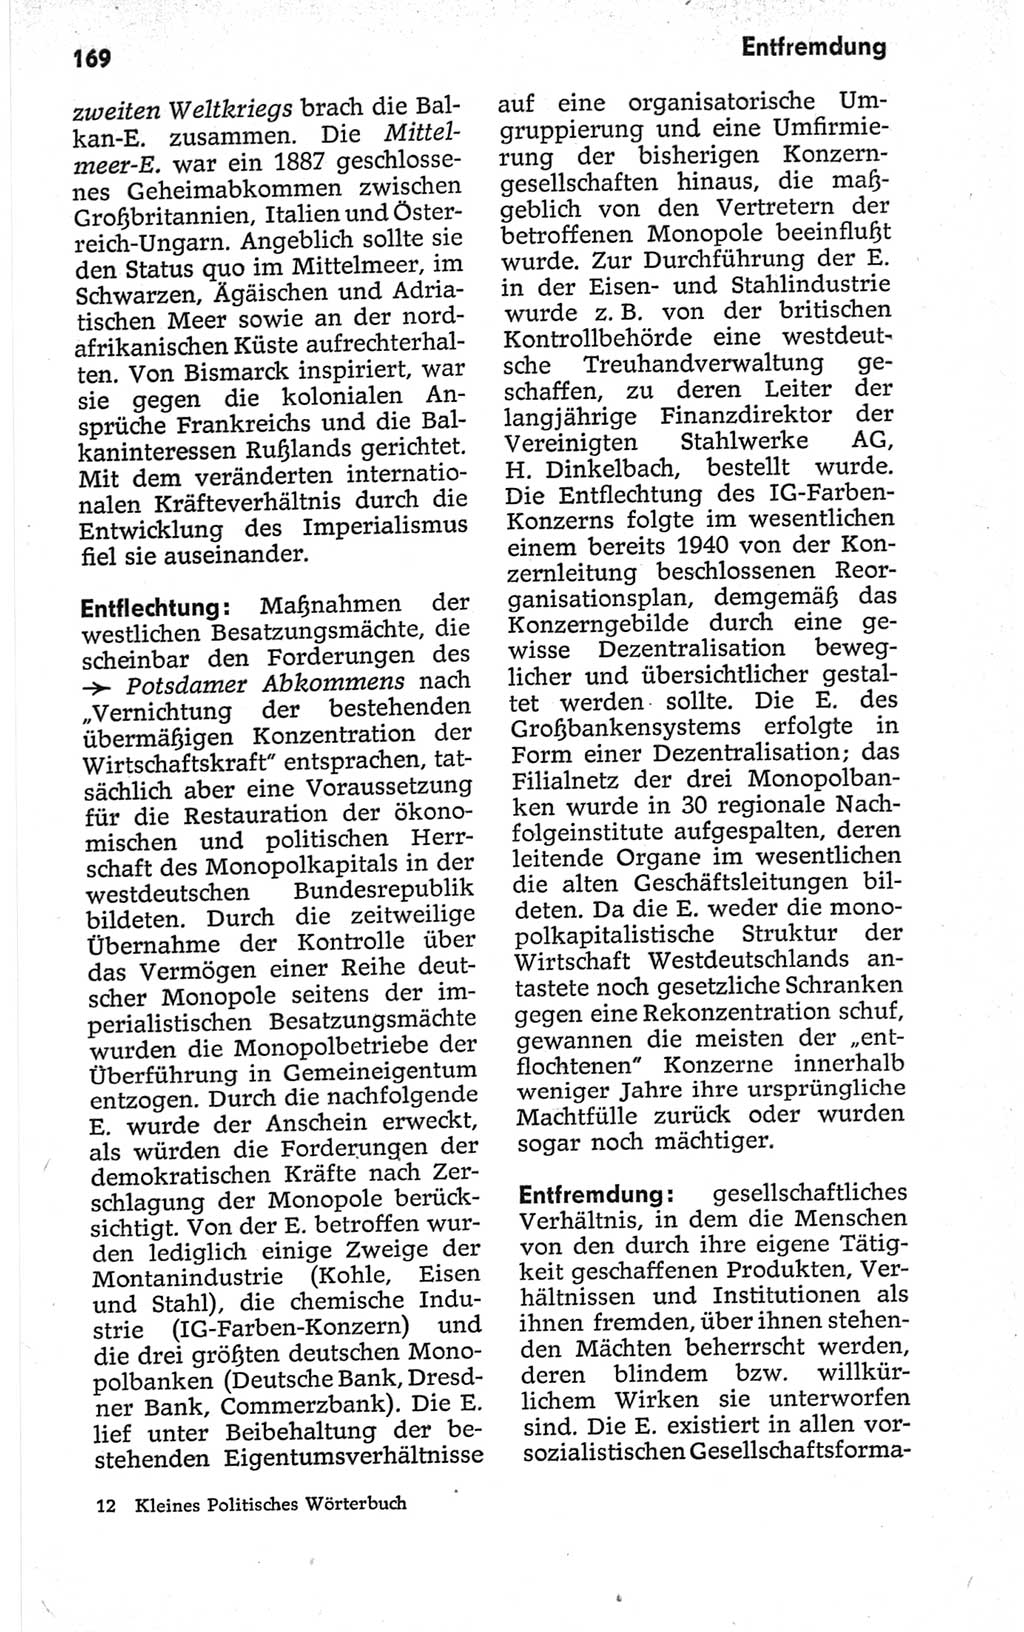 Kleines politisches Wörterbuch [Deutsche Demokratische Republik (DDR)] 1967, Seite 169 (Kl. pol. Wb. DDR 1967, S. 169)